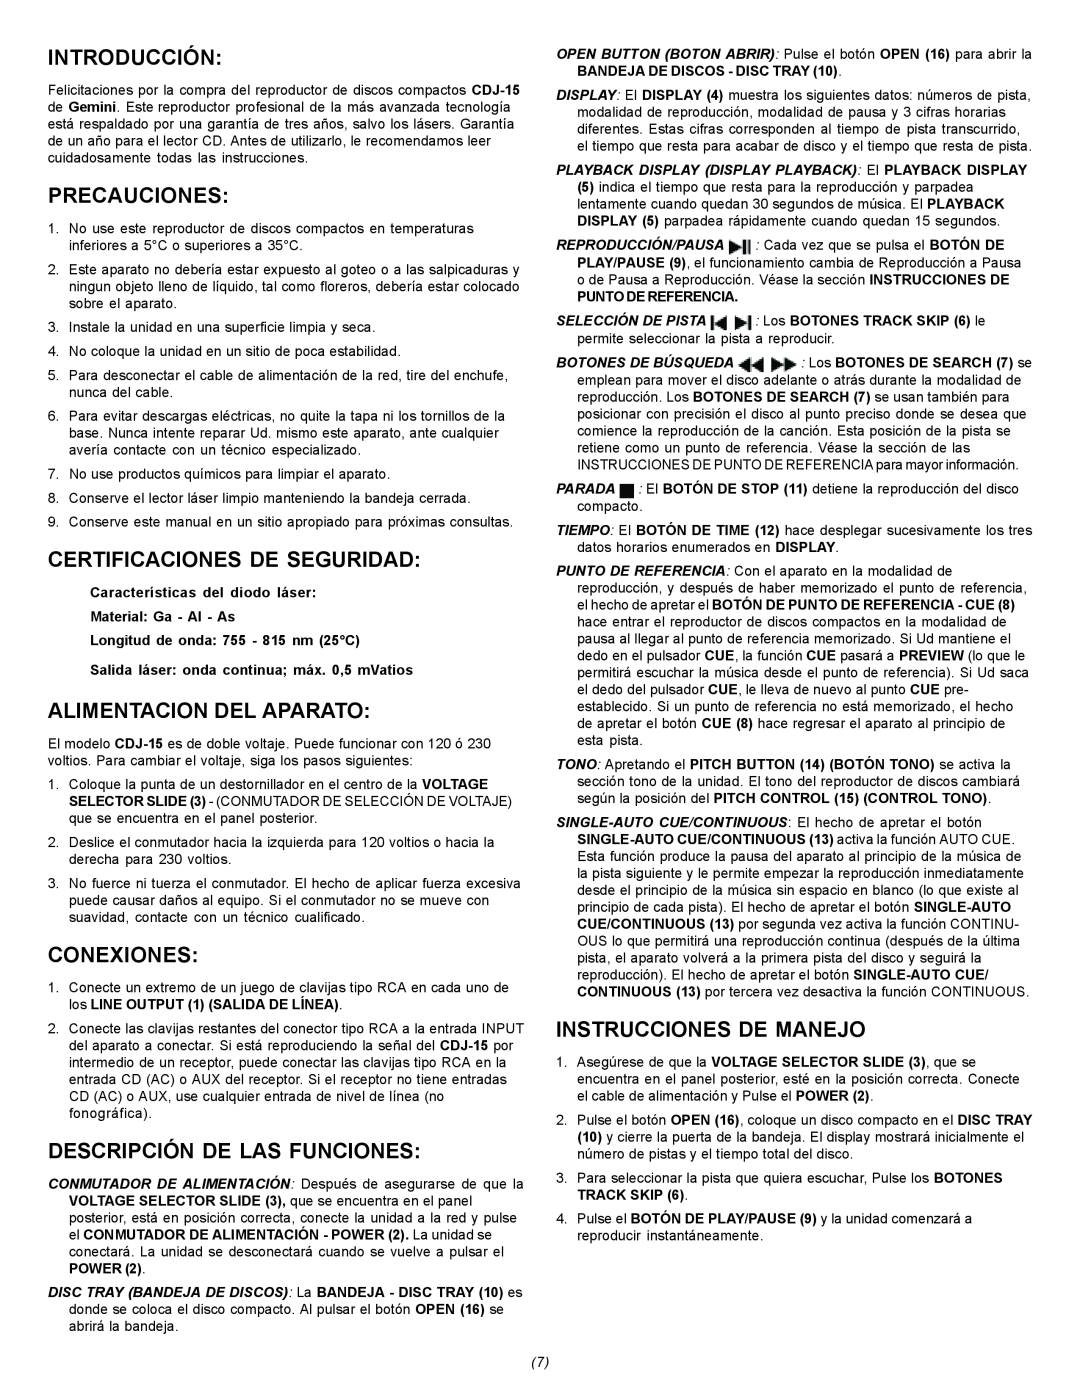 Gemini CDJ-15 manual Introducción, Precauciones, Certificaciones De Seguridad, Alimentacion Del Aparato, Conexiones 